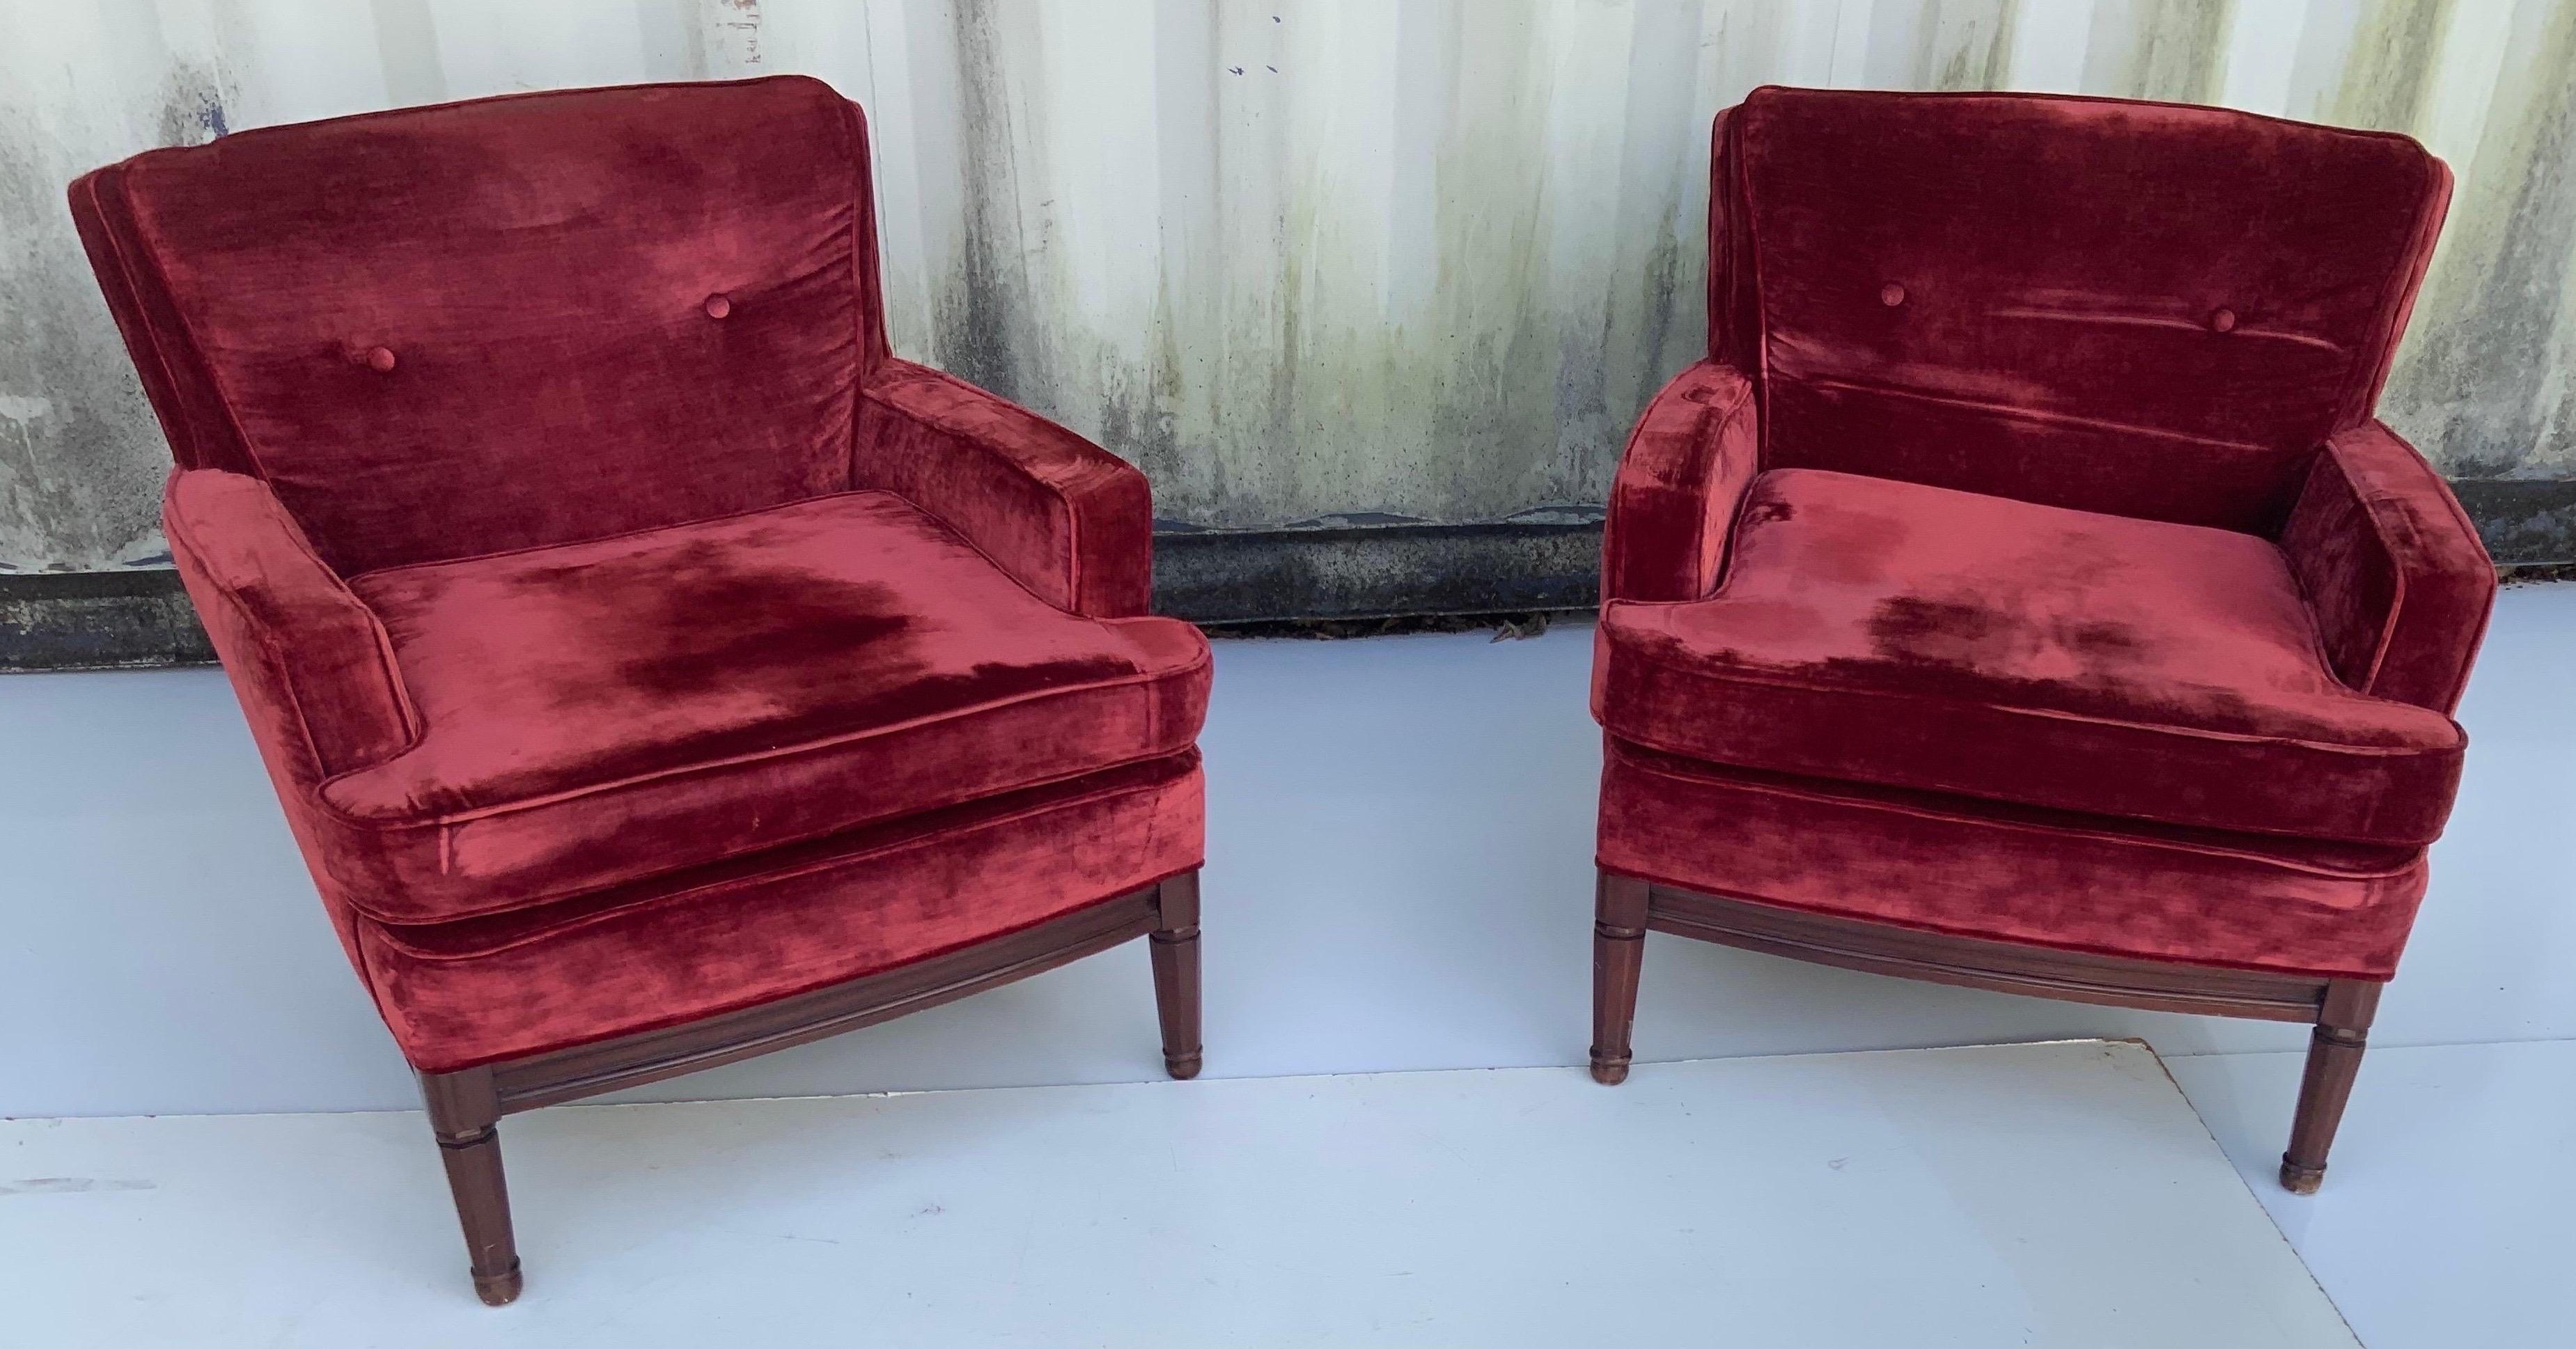 Paar von  Französisch Neoklassische Maison Jansen Lounge Stühle CIRCA 1960, 2Paare verfügbar .
Preis pro Paar 
Original-Samtstoff, sehr guter Zustand.
Stabil und sehr bequem.